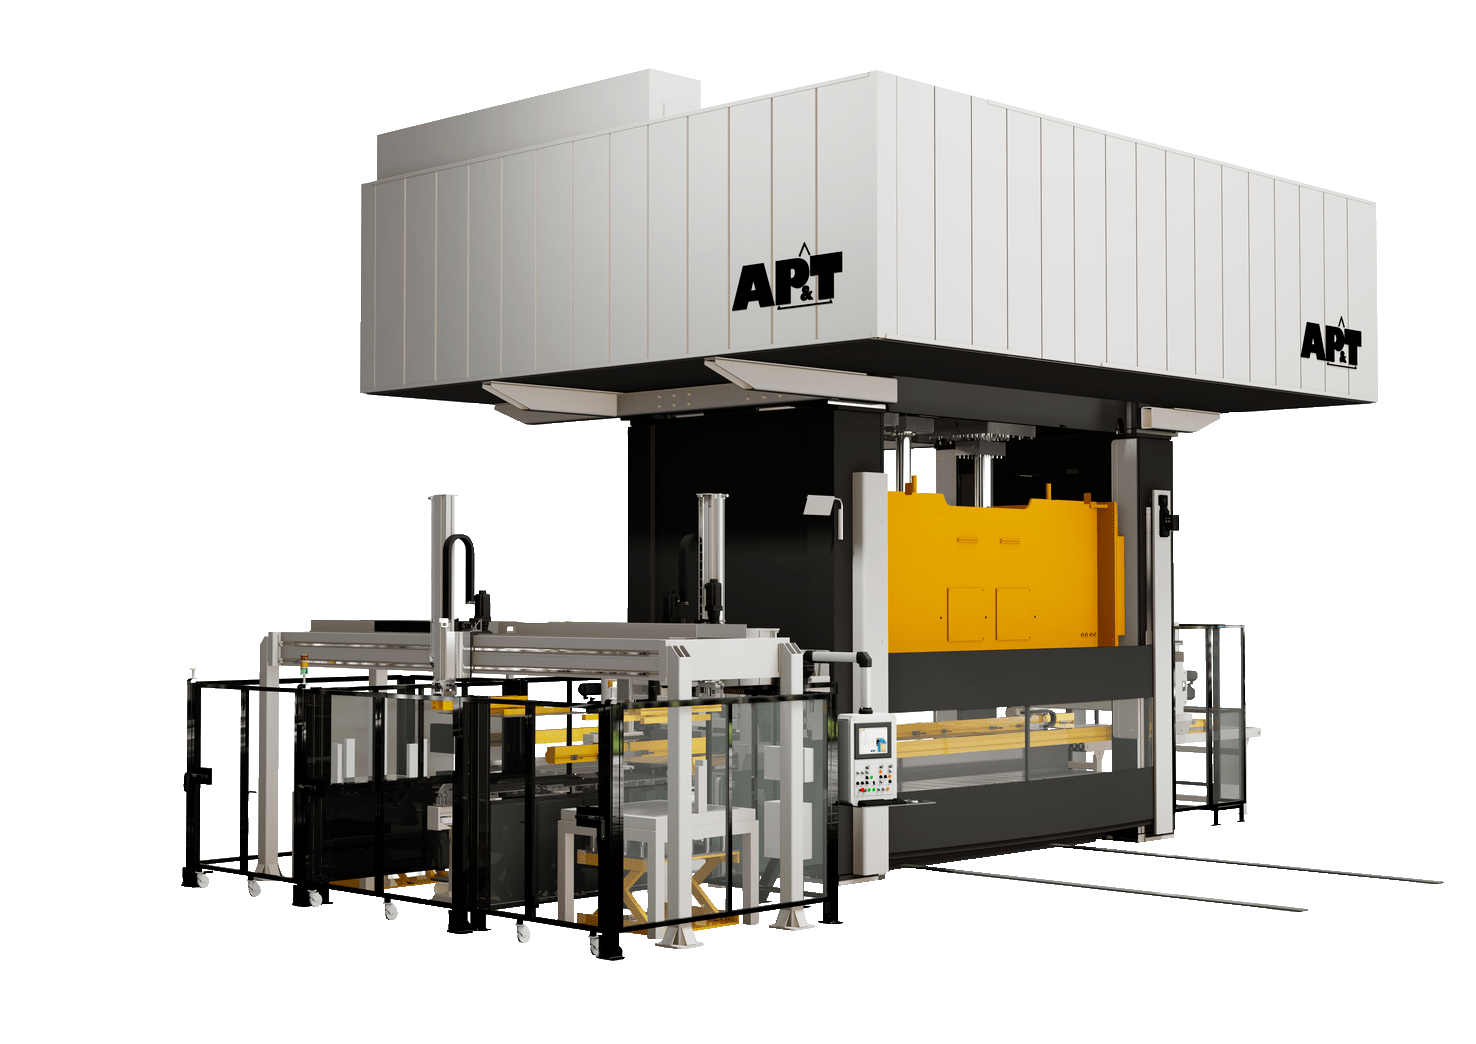 AP&T伺服液压机具有冲程频率高、完全同步和偏心载荷补偿等优点，非常适合应用于多工位解决方案。